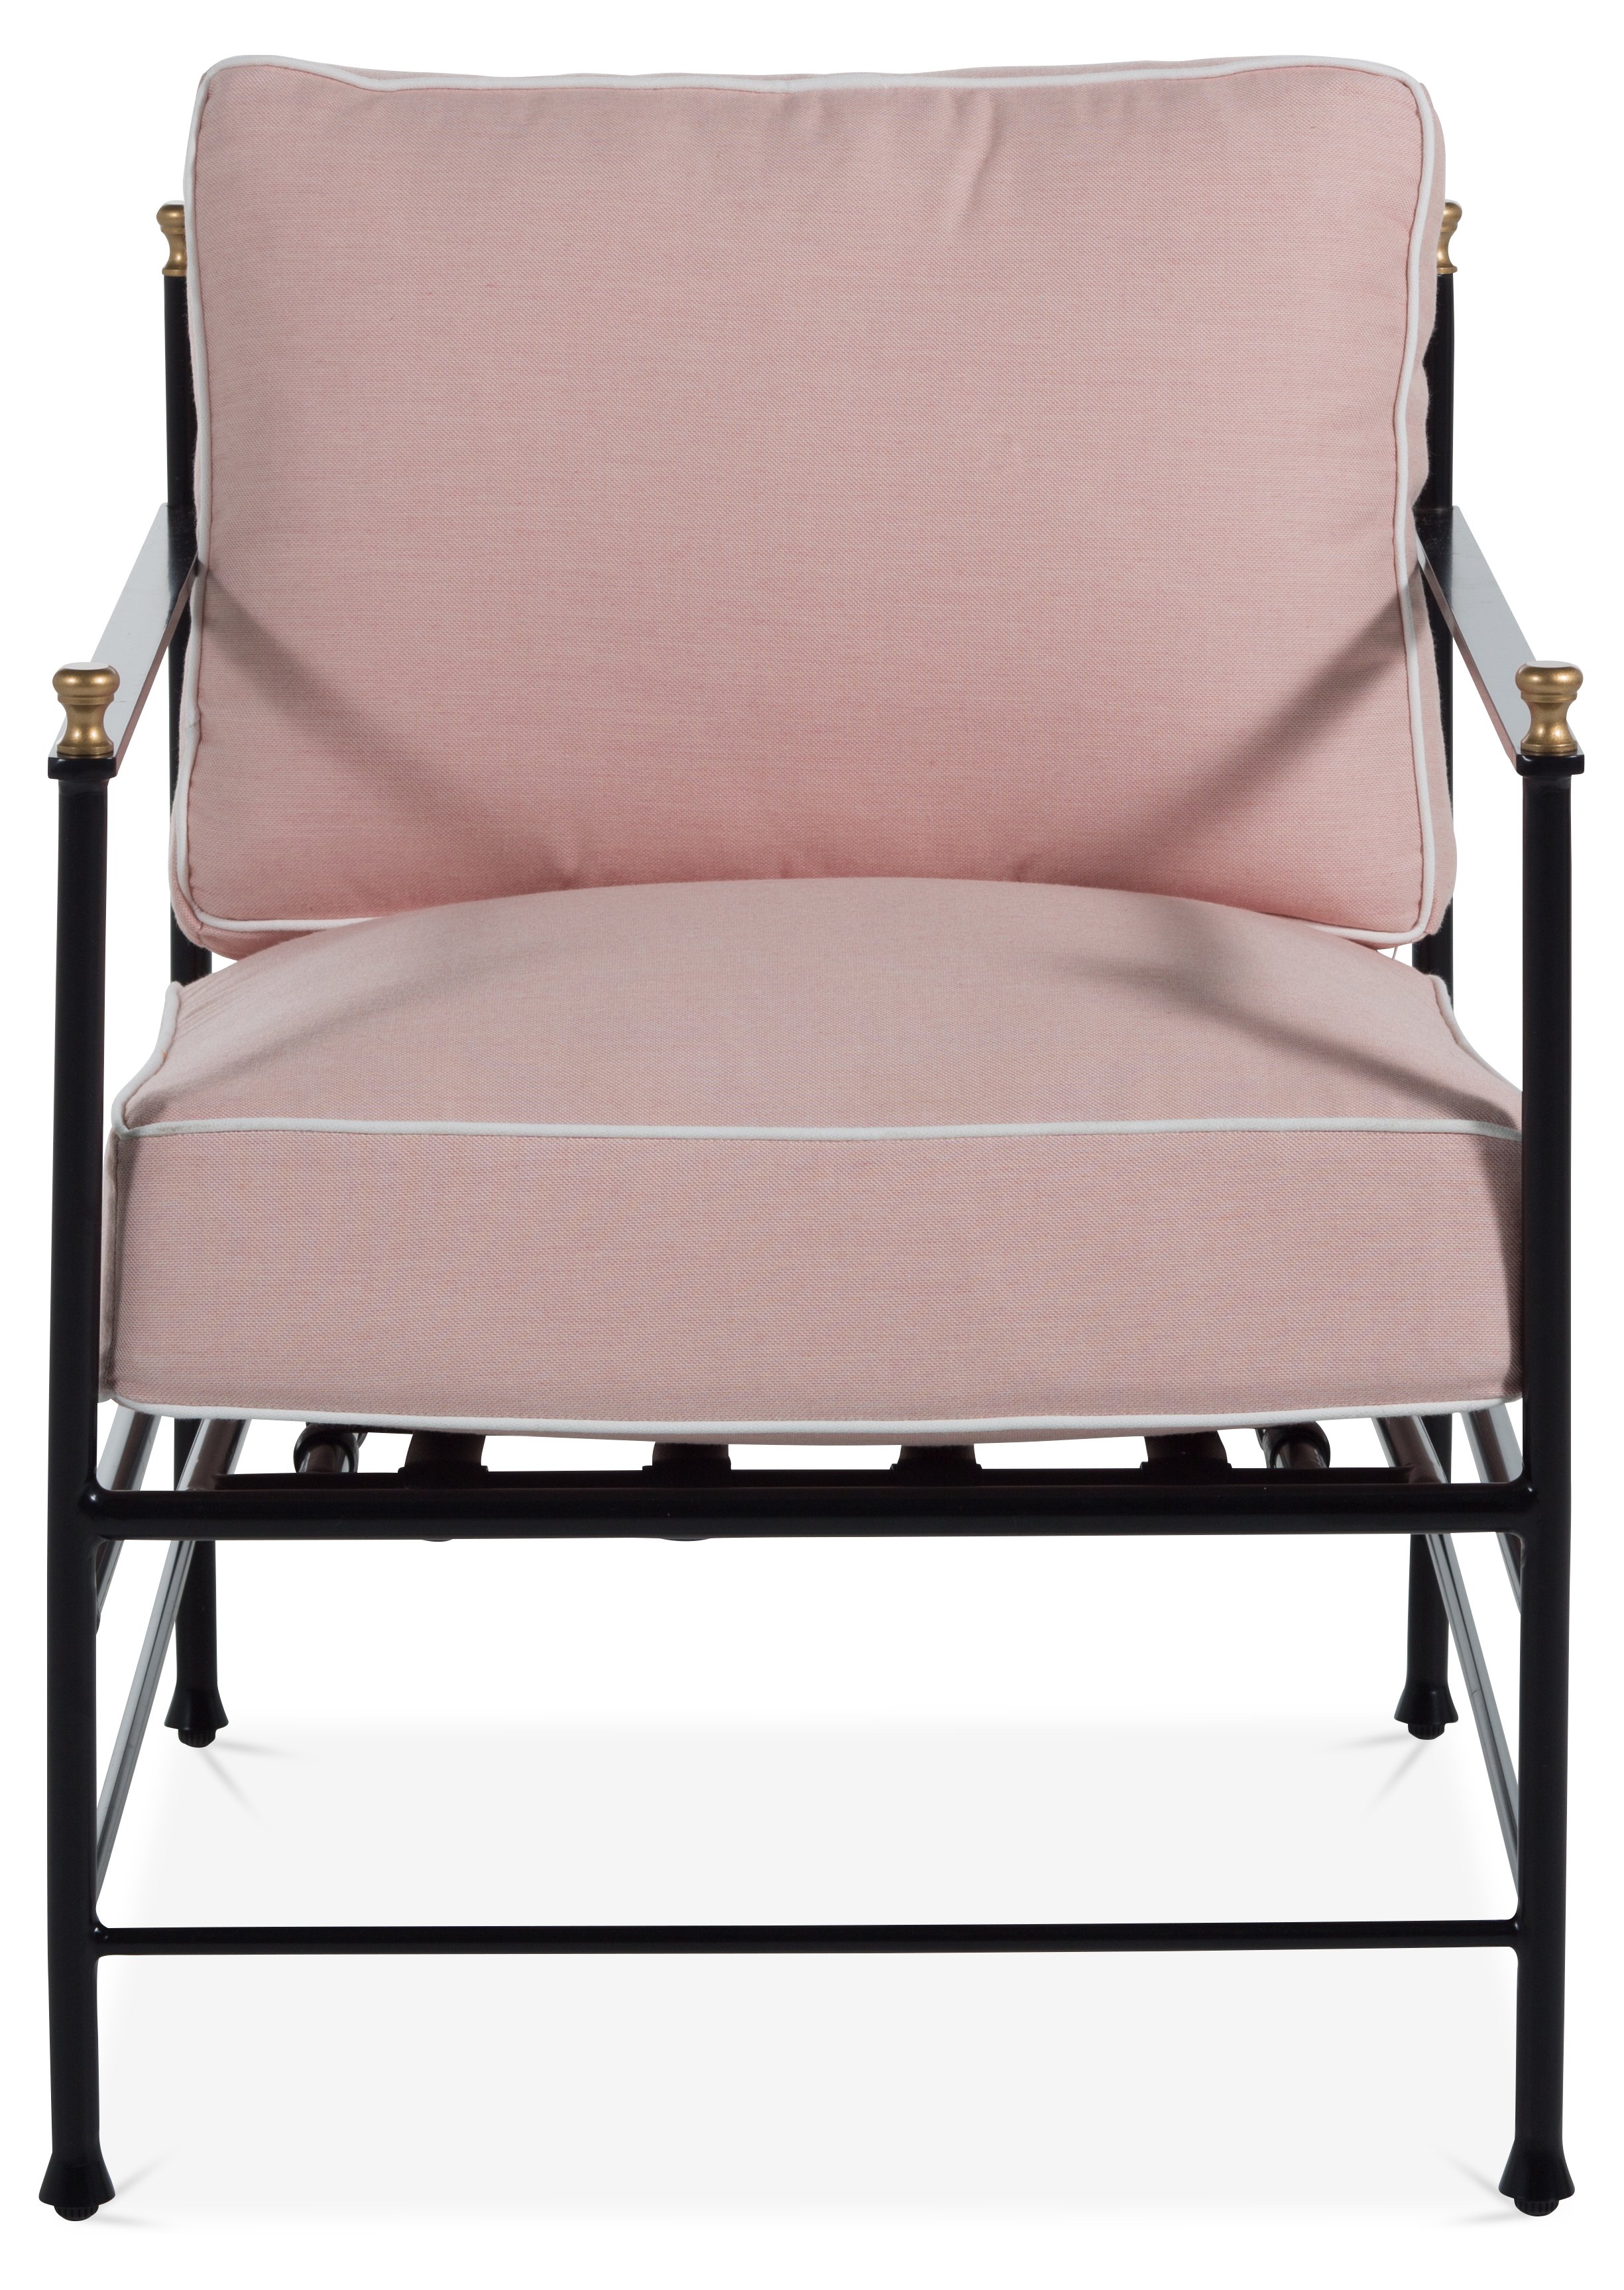 Capitonné moiré chaise lounge in light pink moiré